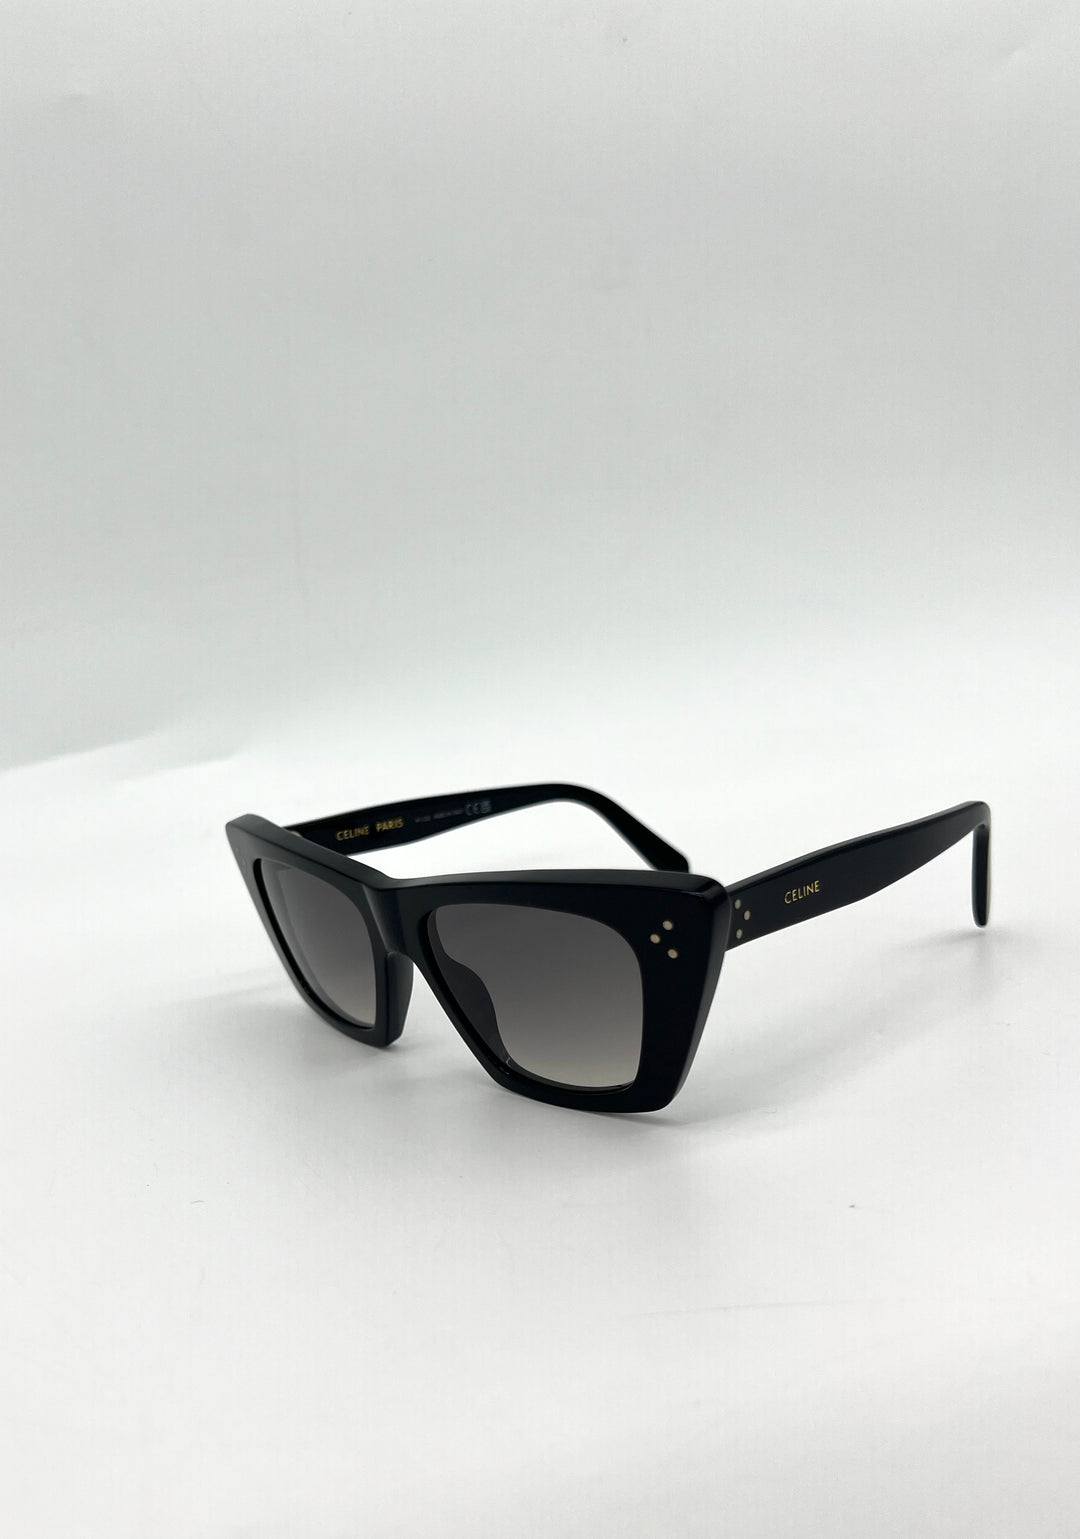 CELINE Sunglasses Black Cat Eye